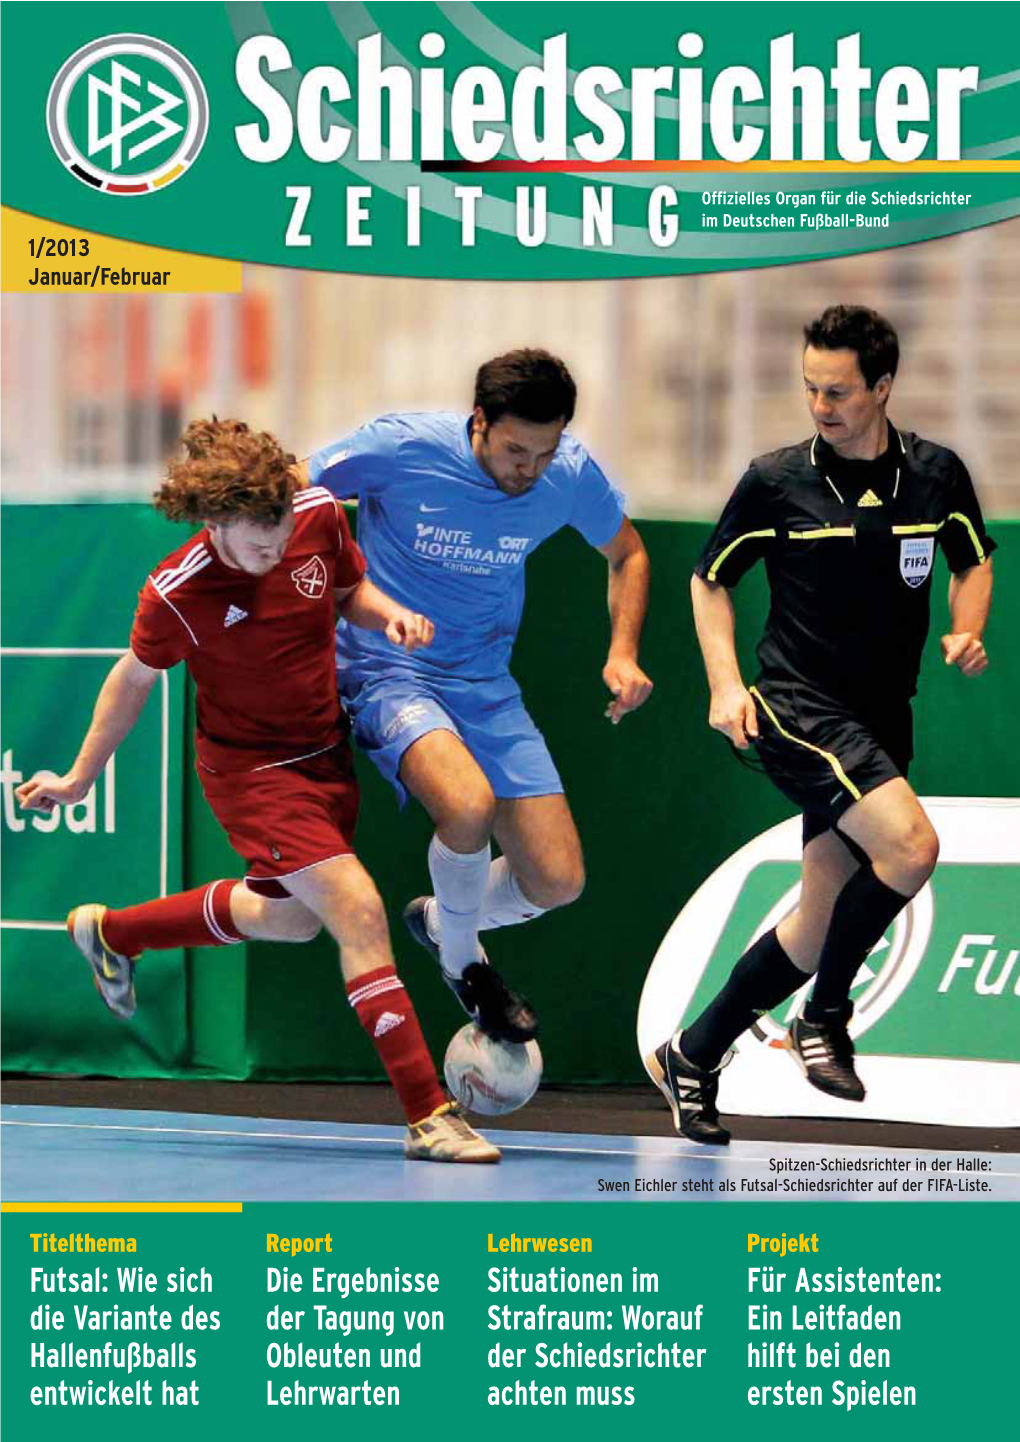 Futsal-Schiedsrichter Auf Der FIFA-Liste